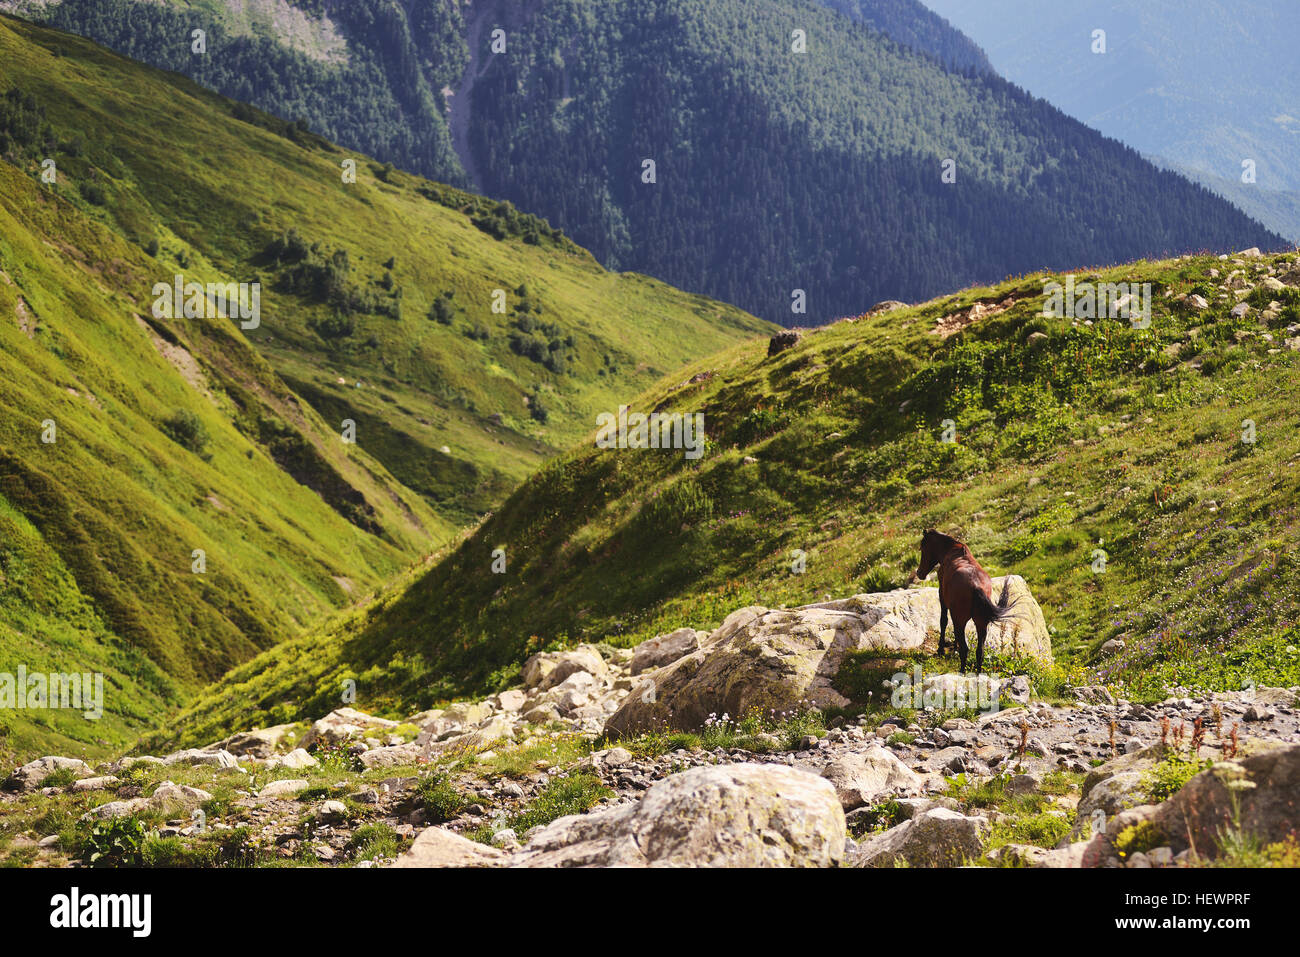 Horse on rocky outcrop, Ushba Mountain, Caucasus, Svaneti, Georgia, USA Stock Photo